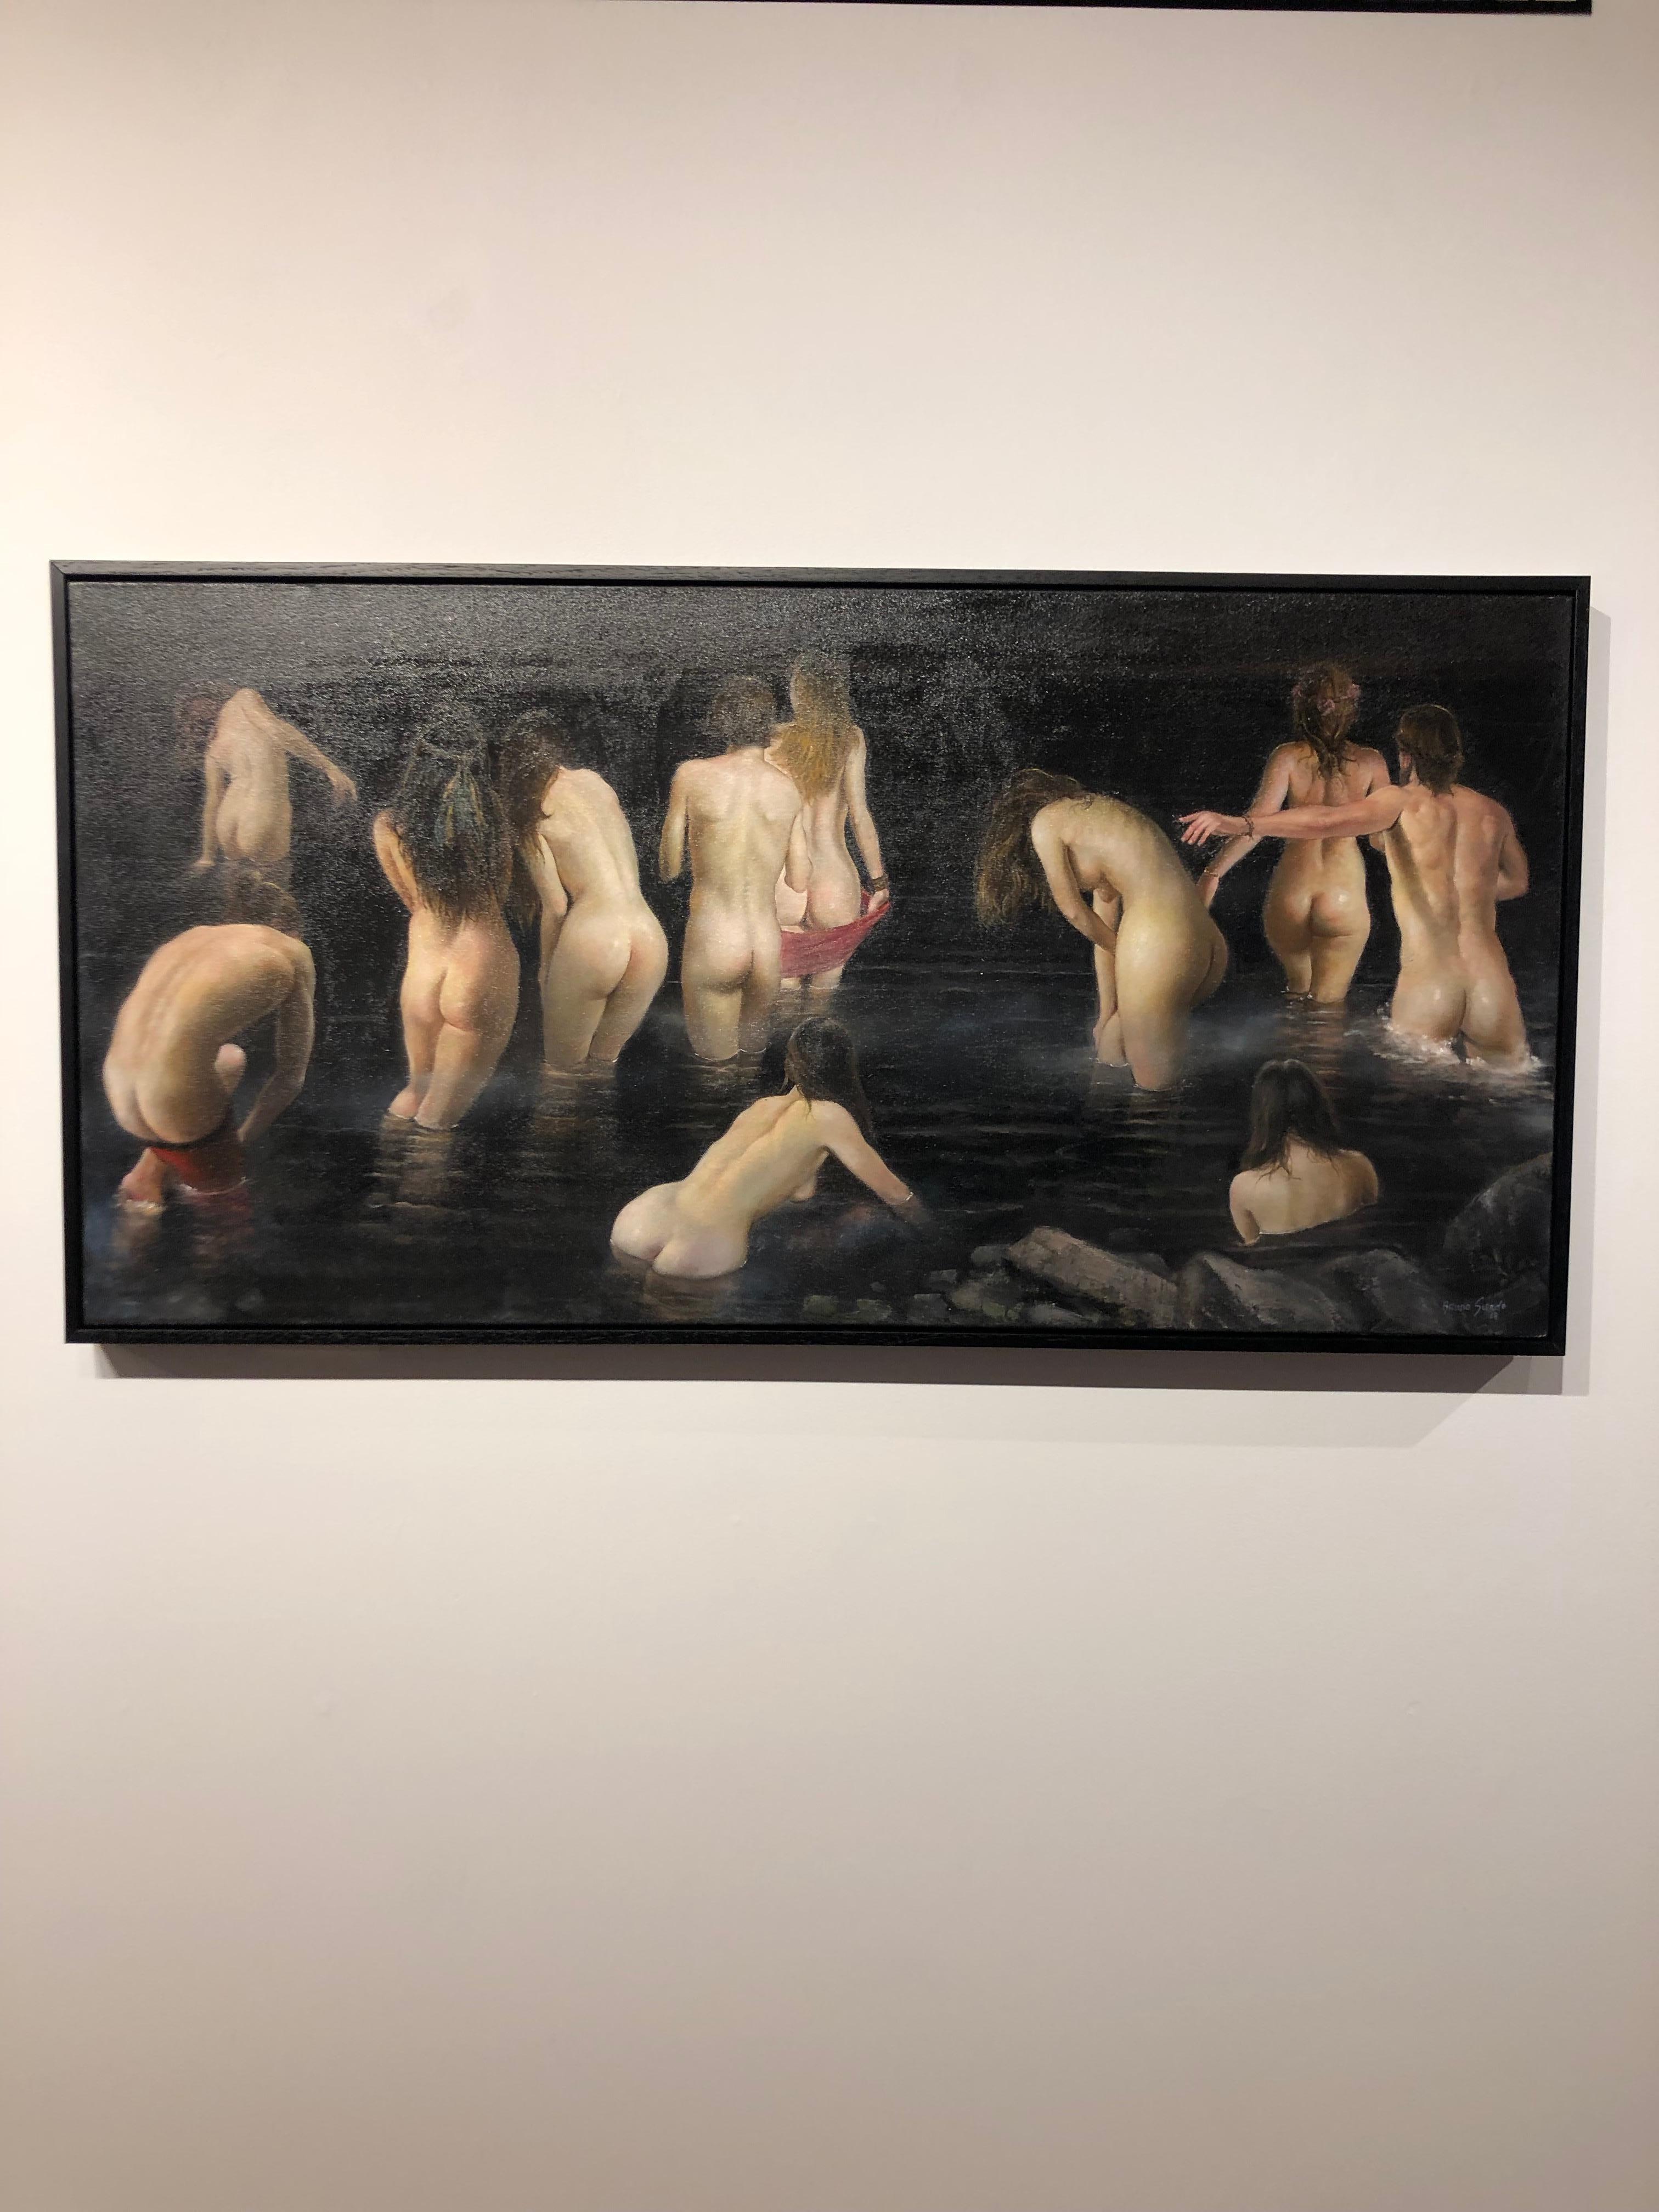 The Abyss - Original-Ölgemälde von nackten Figuren, die auf einem Gefäß wandern – Painting von Bruno Surdo